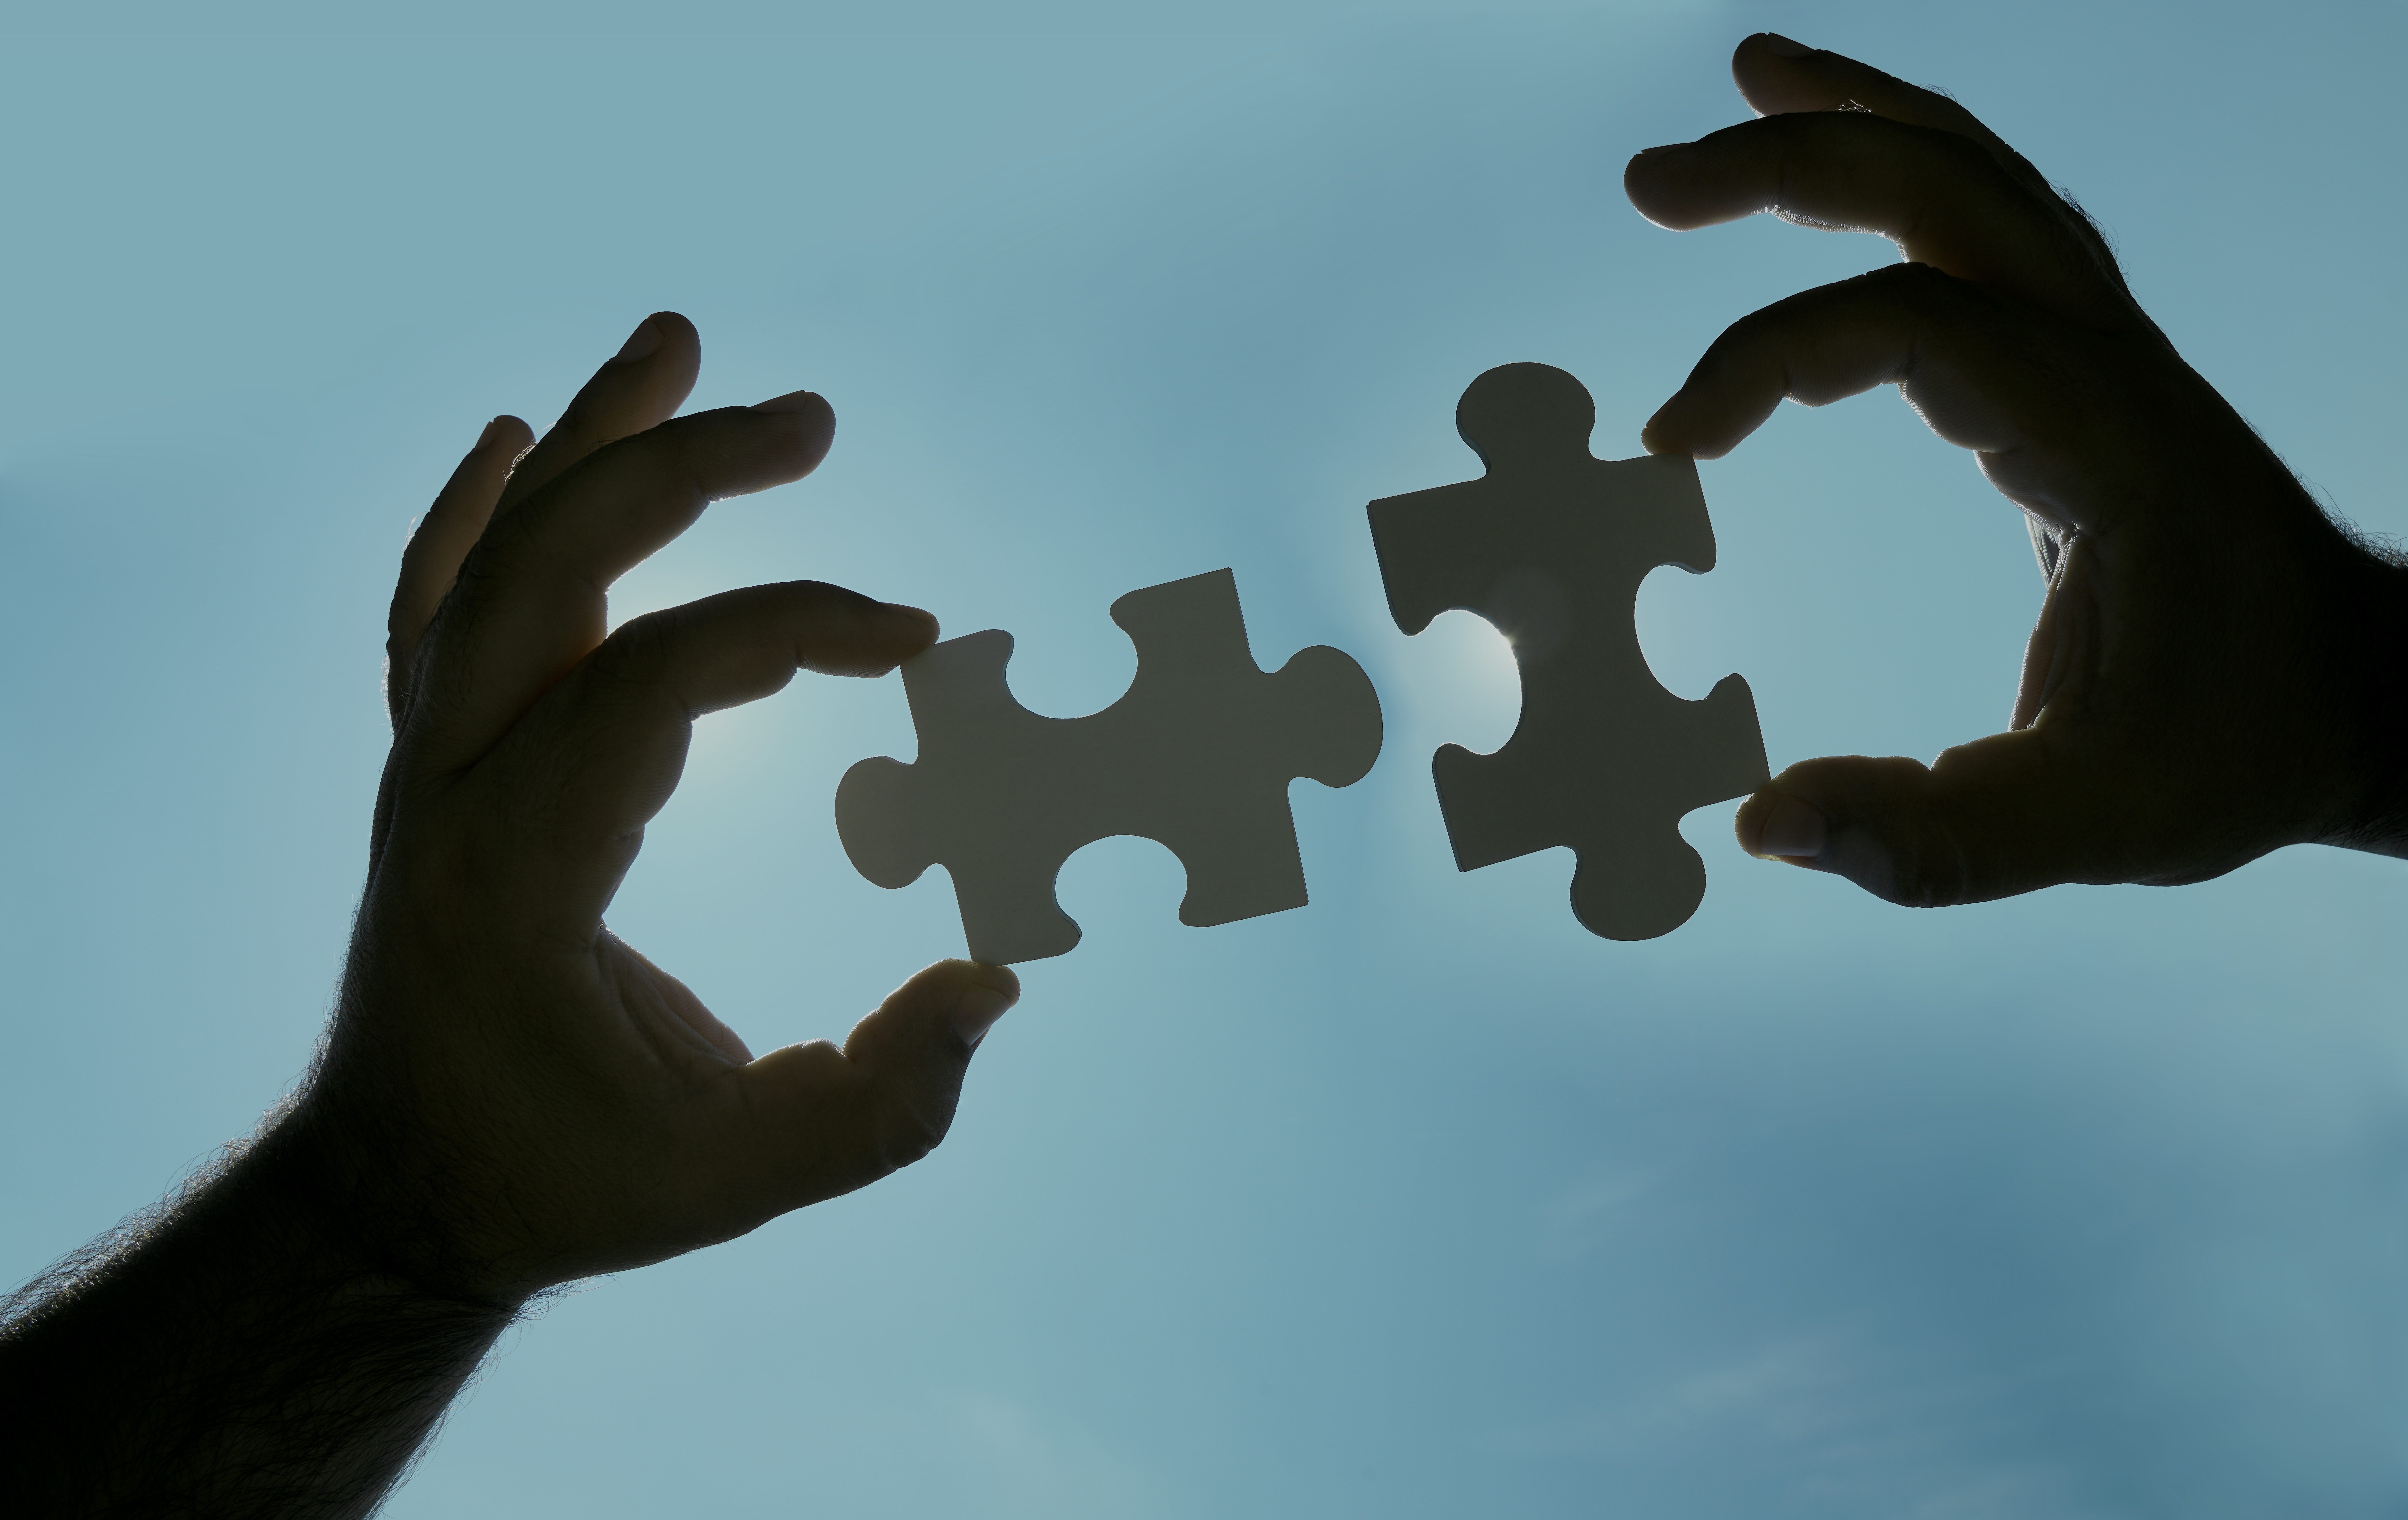 Two jigsaw piece image denoting partnership